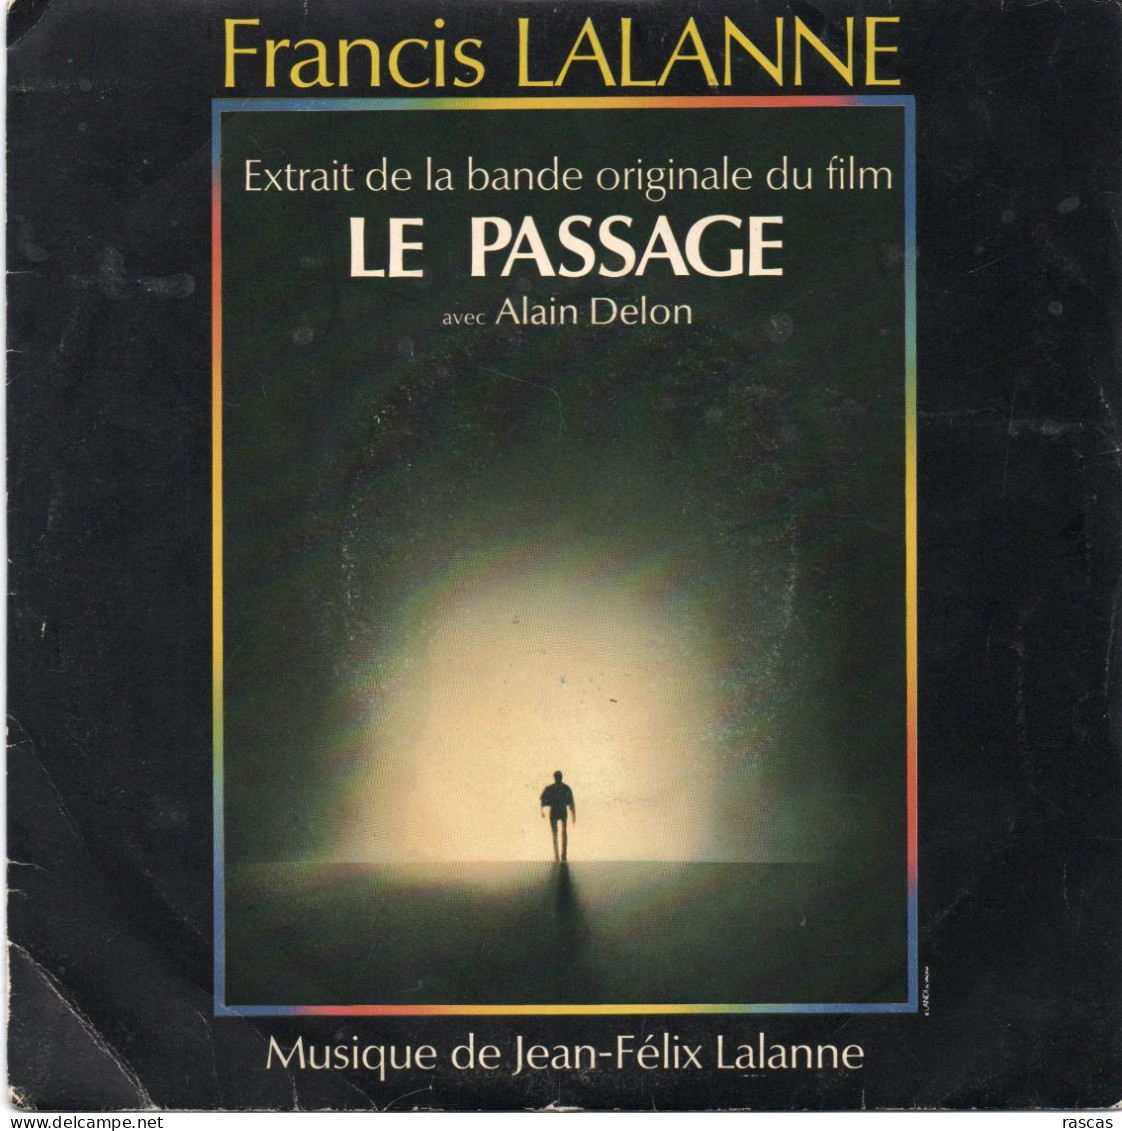 DISQUE VINYL 45 T DU CHANTEUR FRANCAIS FRANCIS LALANNE - LE PASSAGE - EXTRAIT DE LA BANDE ORIGINALE DU FILM - Soundtracks, Film Music